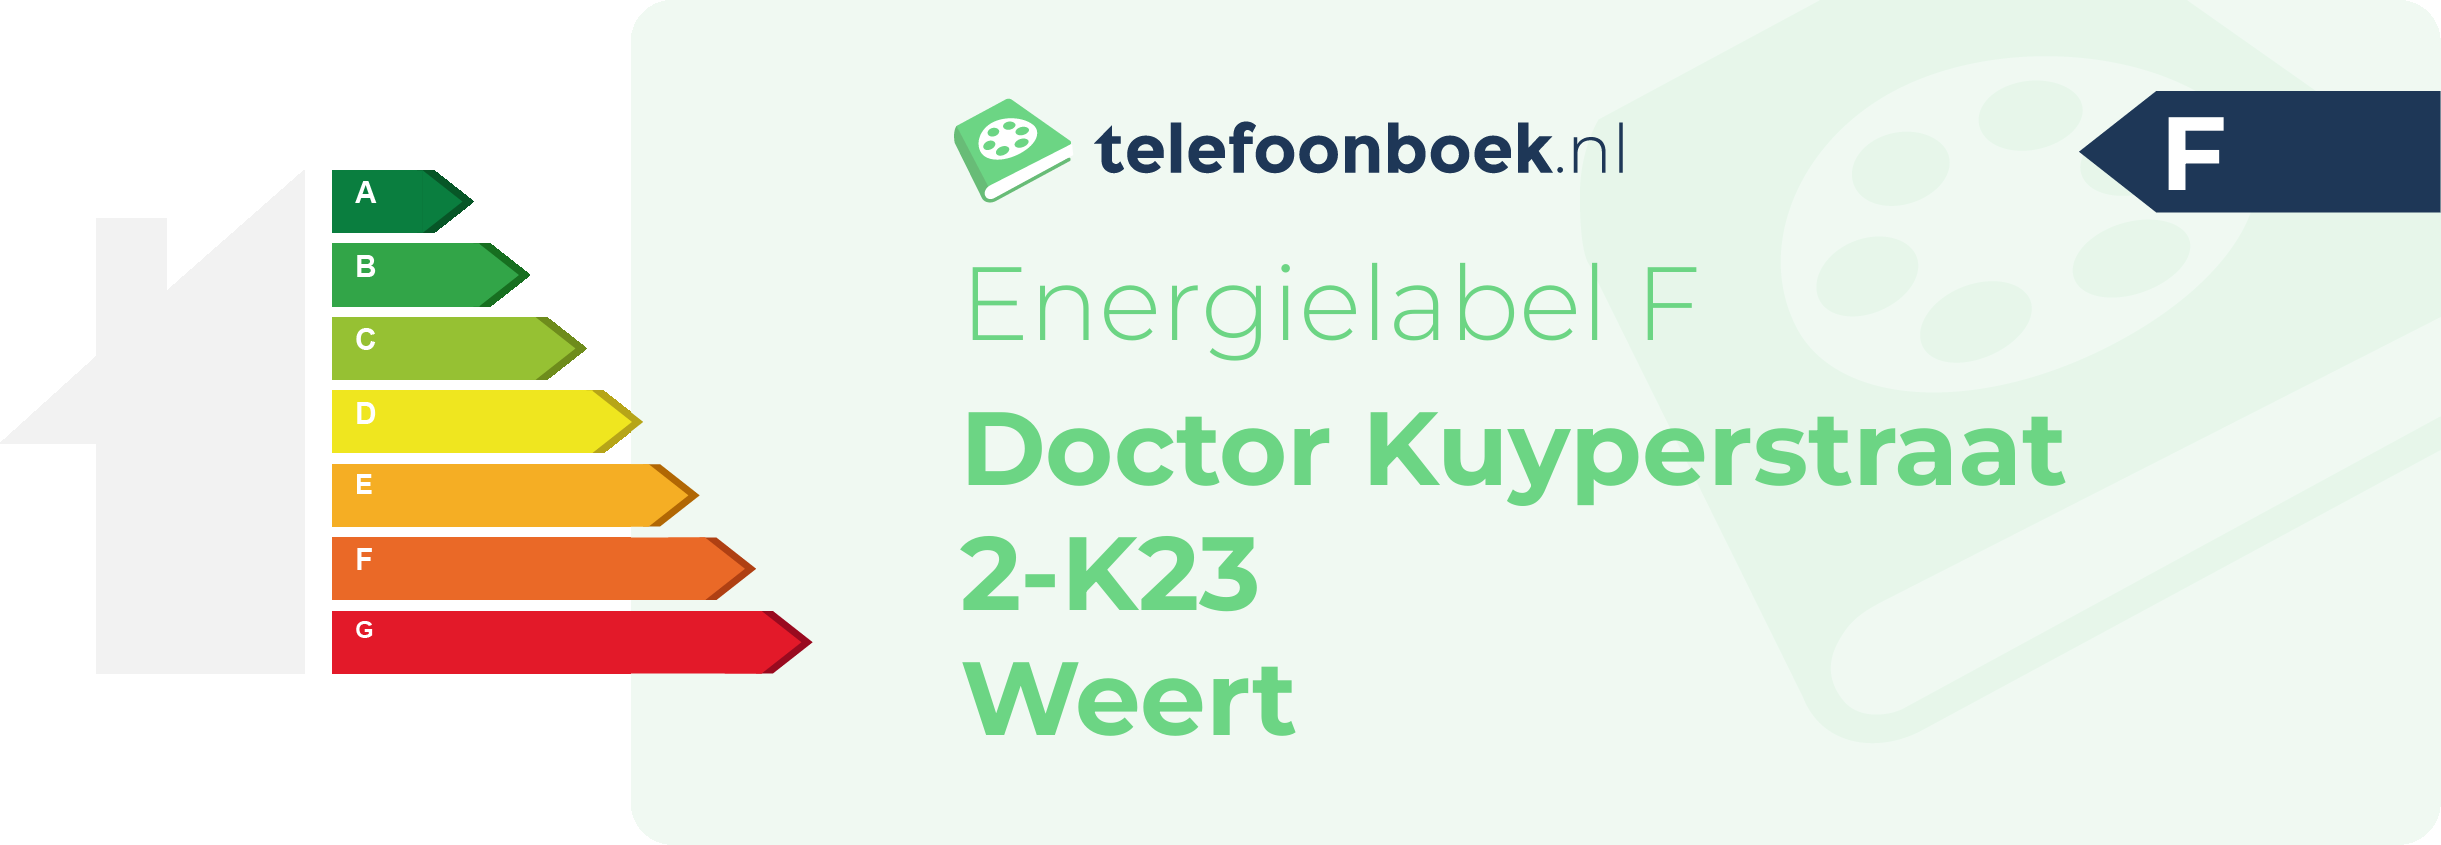 Energielabel Doctor Kuyperstraat 2-K23 Weert